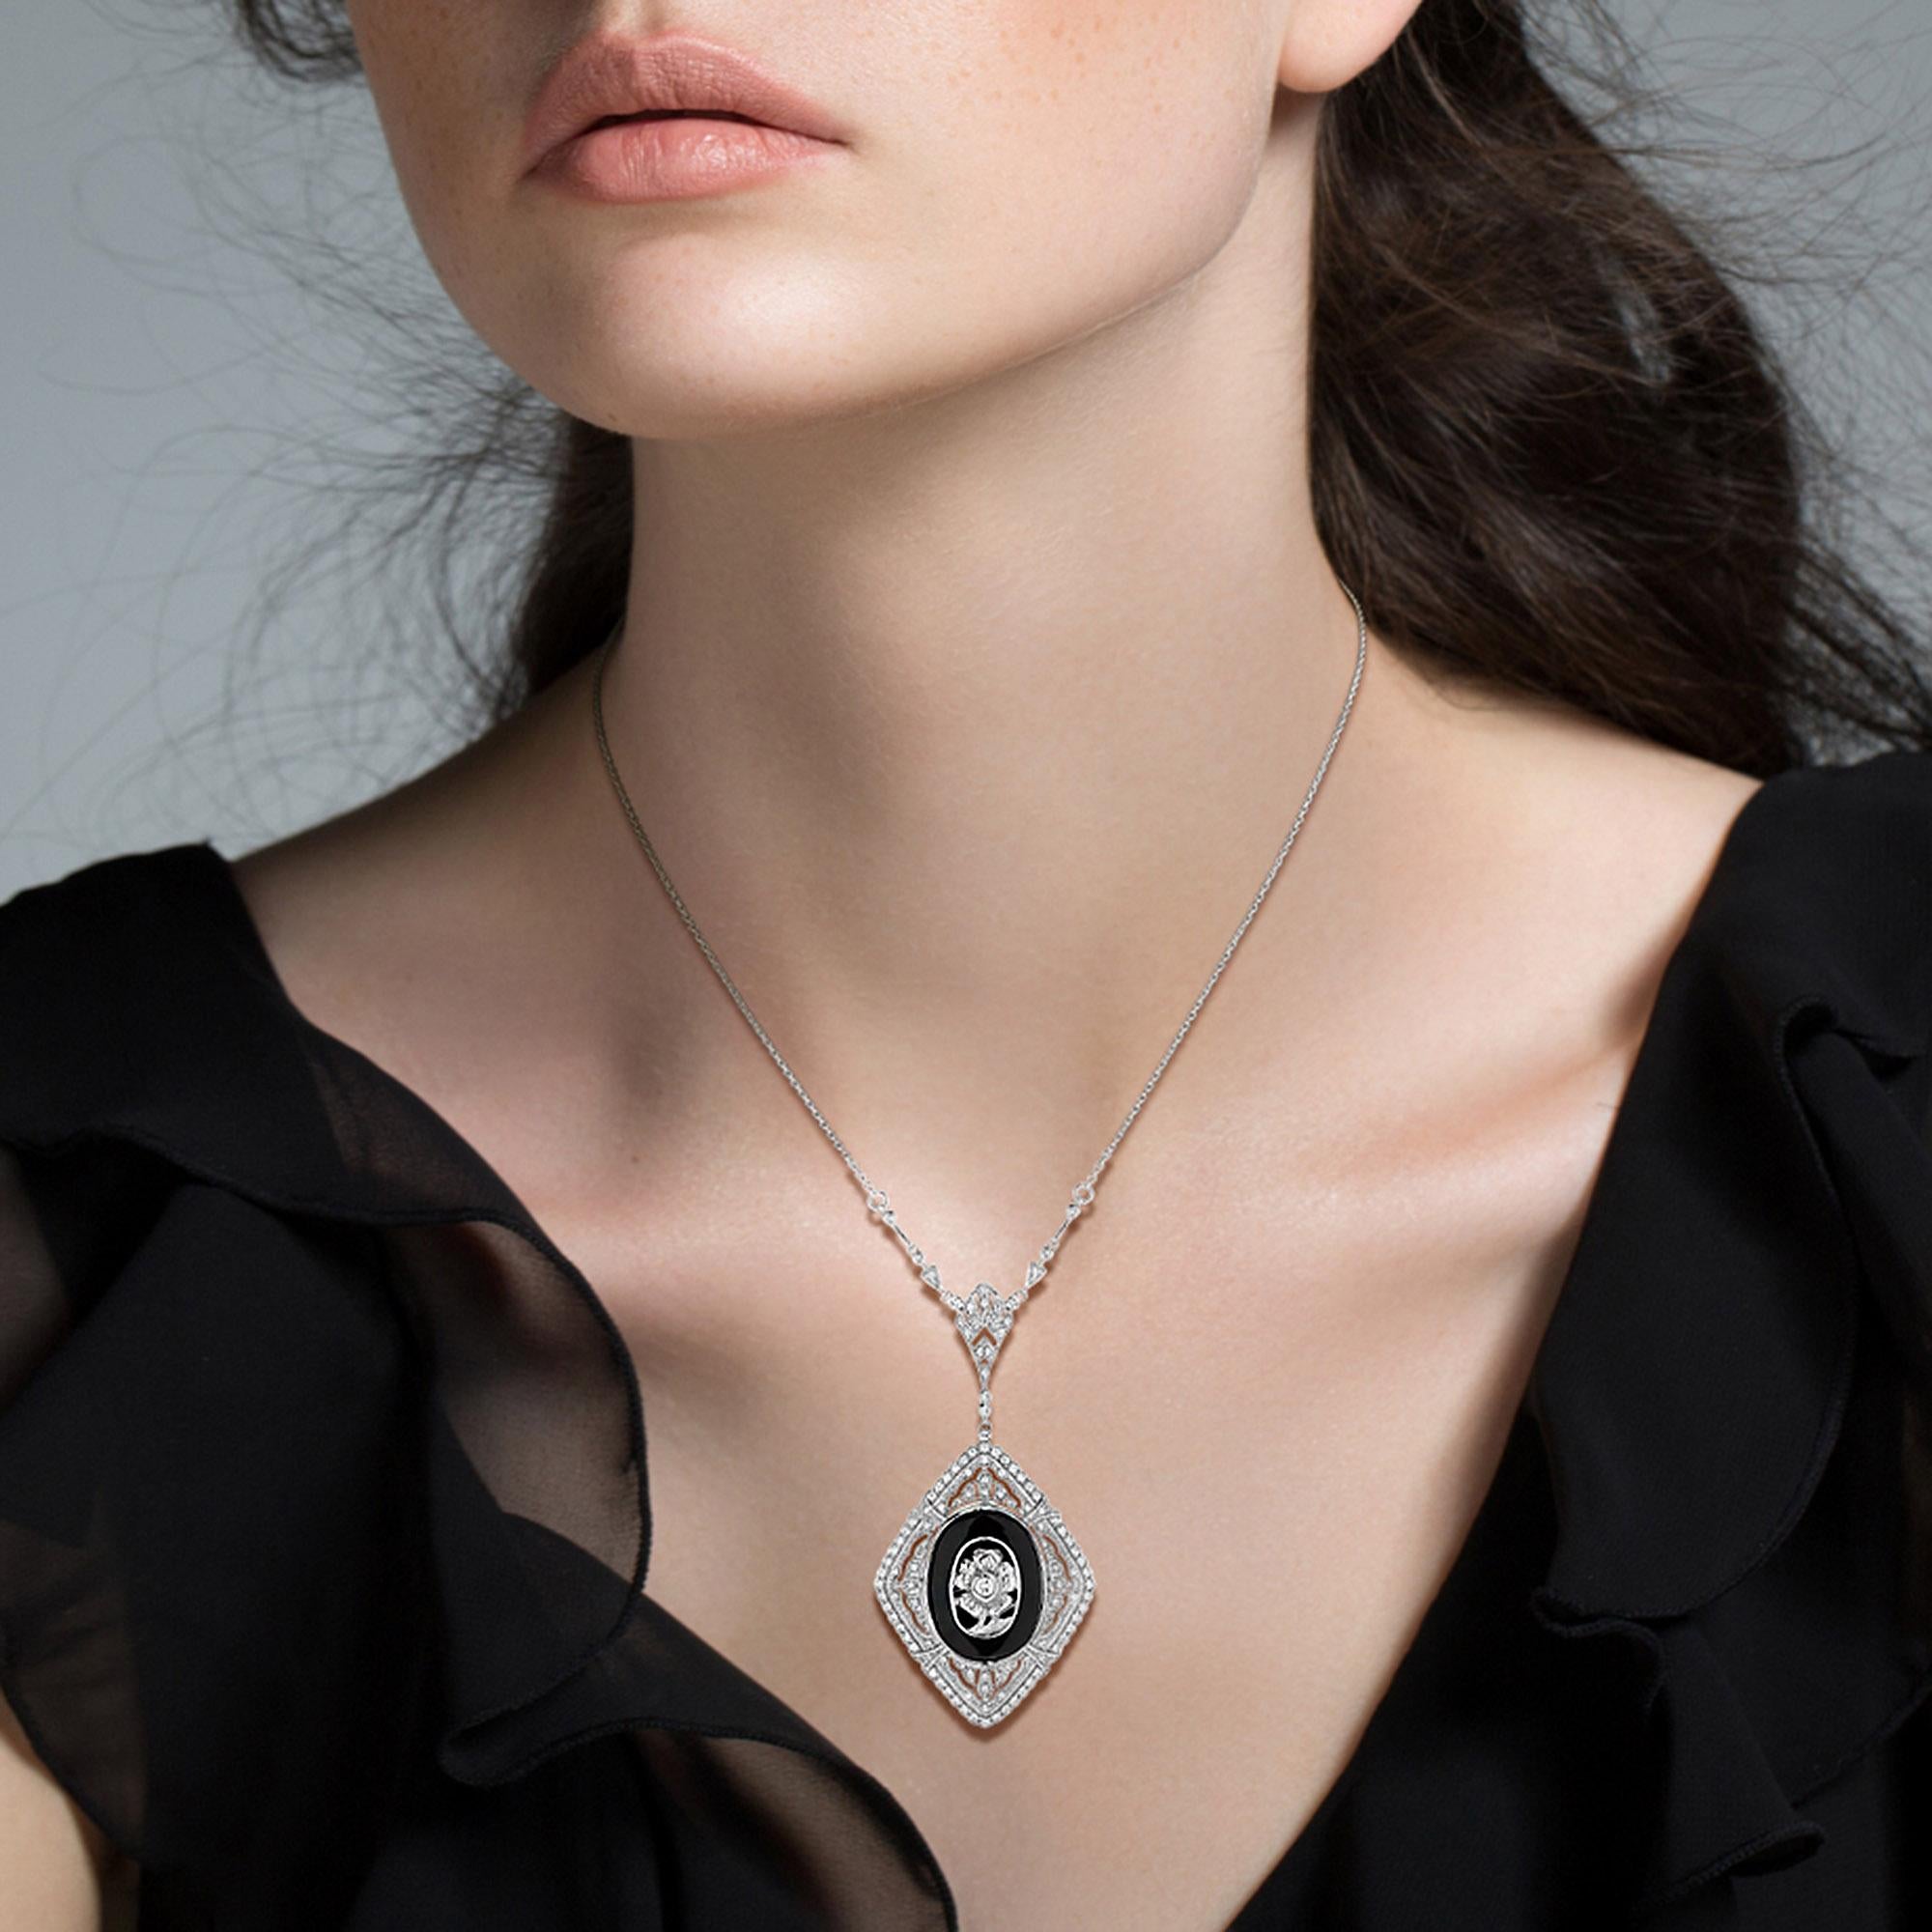 Dieser dramatisch auffällige Schmuck im Art-Déco-Stil in herrlichem Schwarz und Weiß besteht aus einem glänzenden, ovalen Onyx, der mit einer Diamantblüte überzogen ist. Diese wiederum sind elegant umrahmt von durchbrochenen Reihen glitzernder